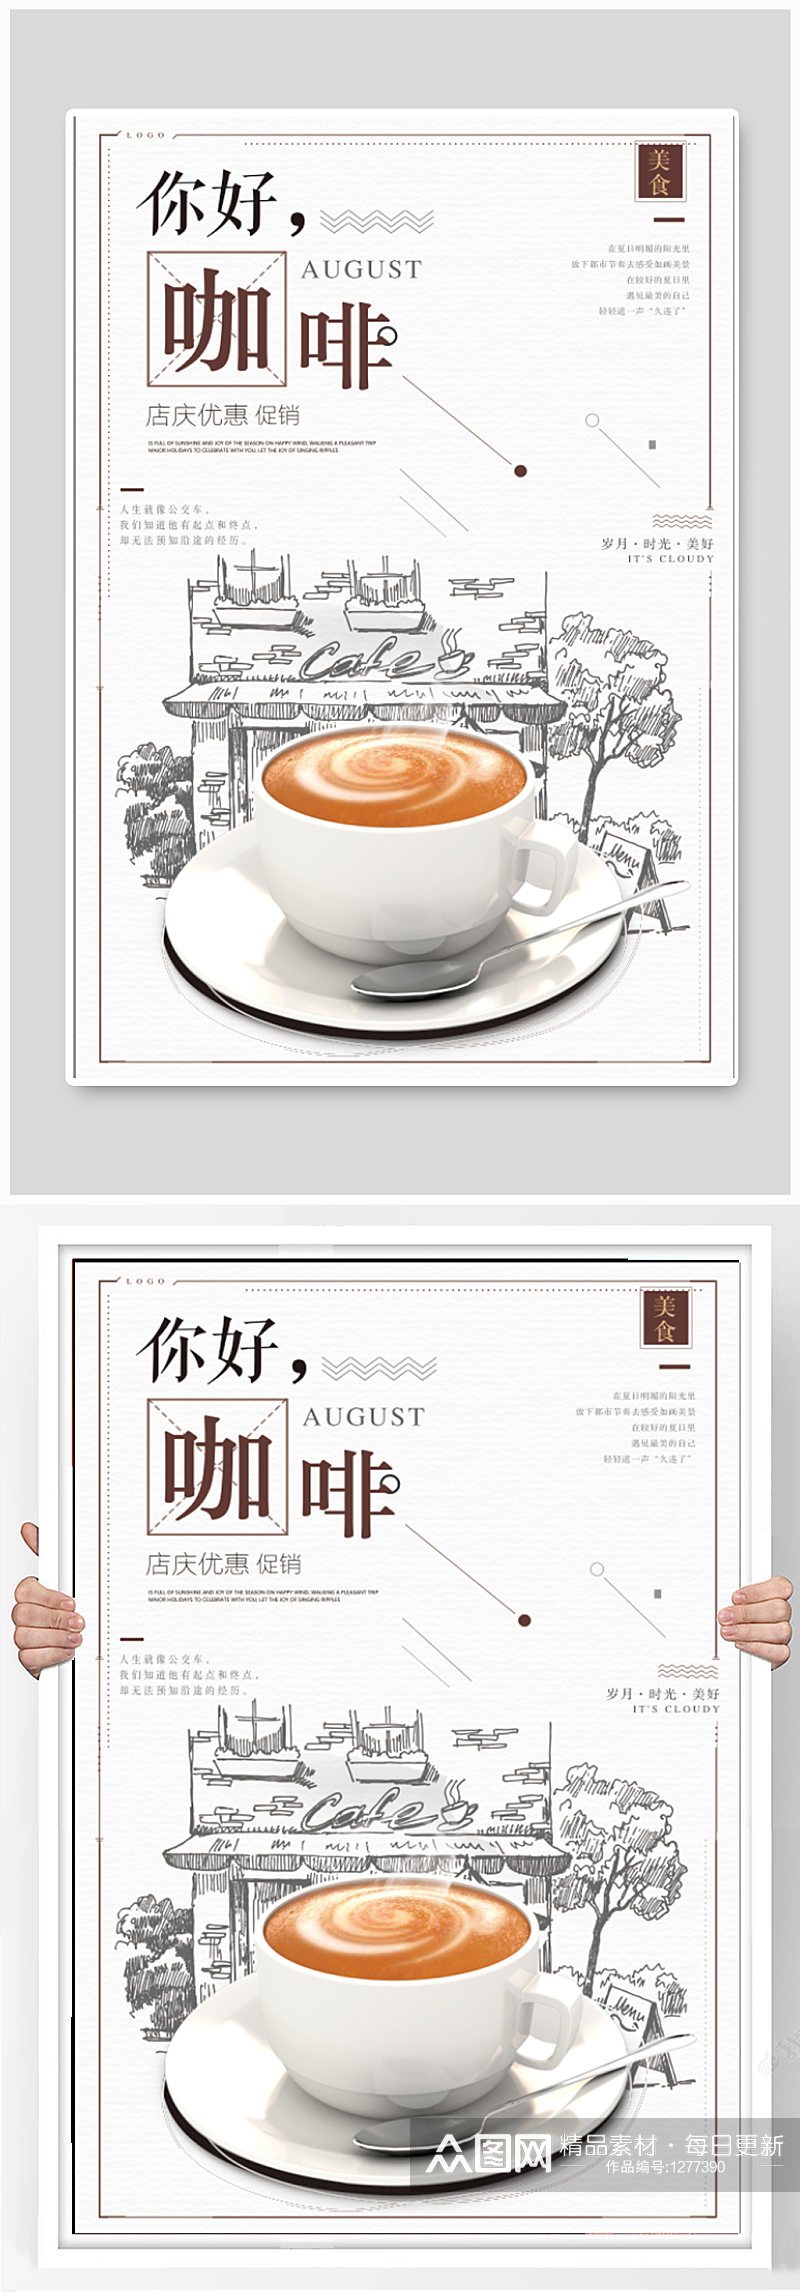 咖啡饮品店促销海报素材